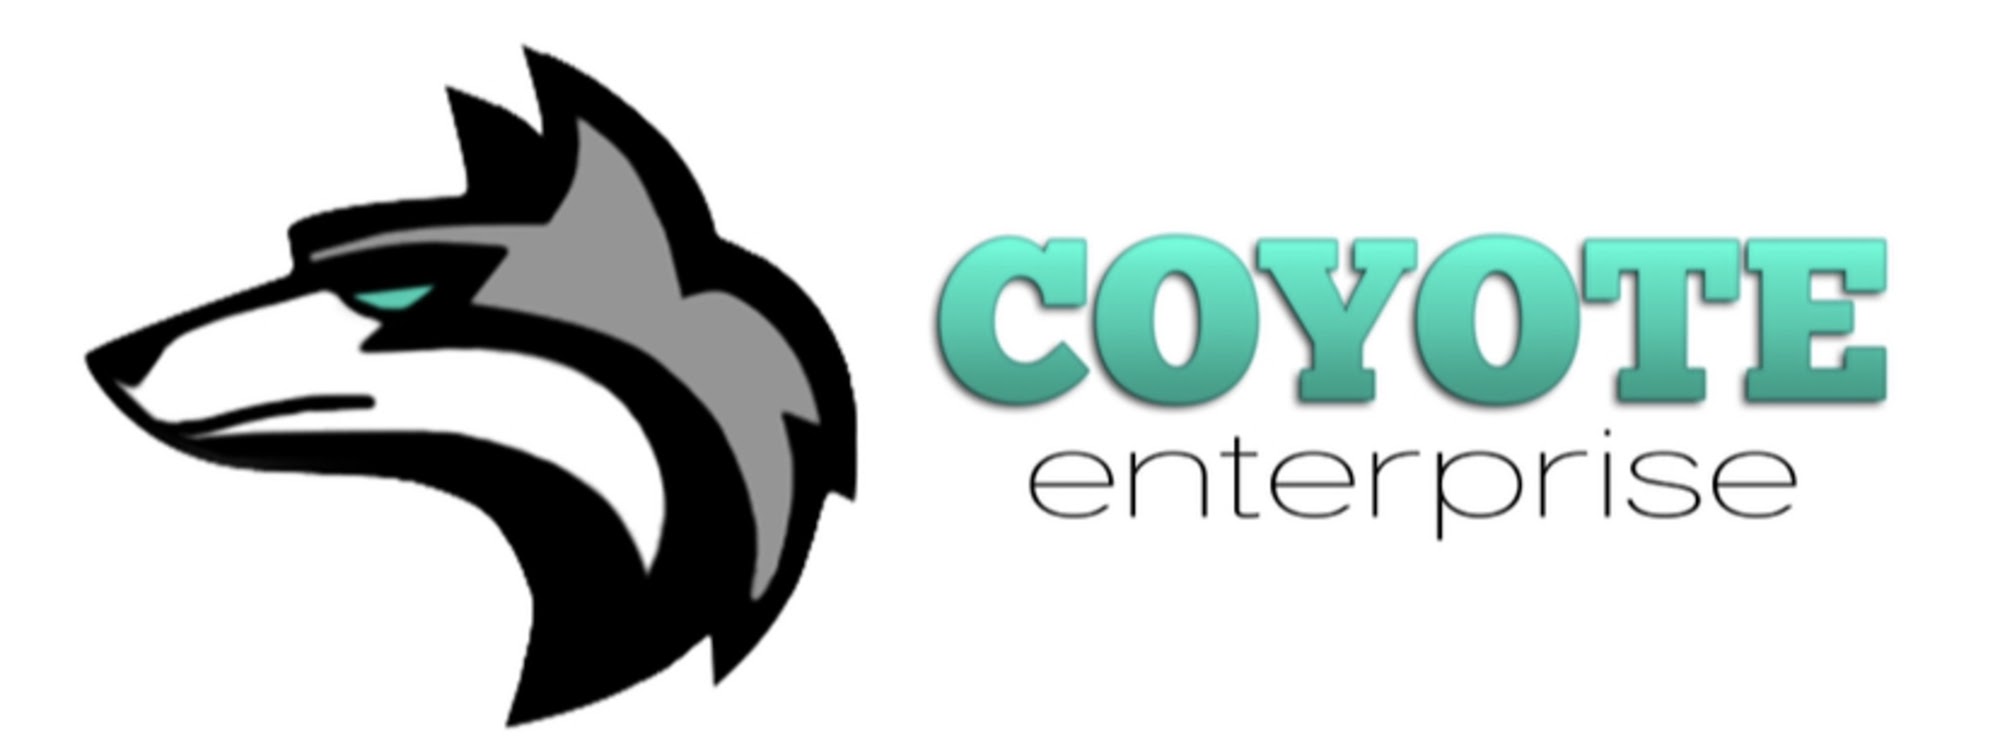 Coyote Enterprise